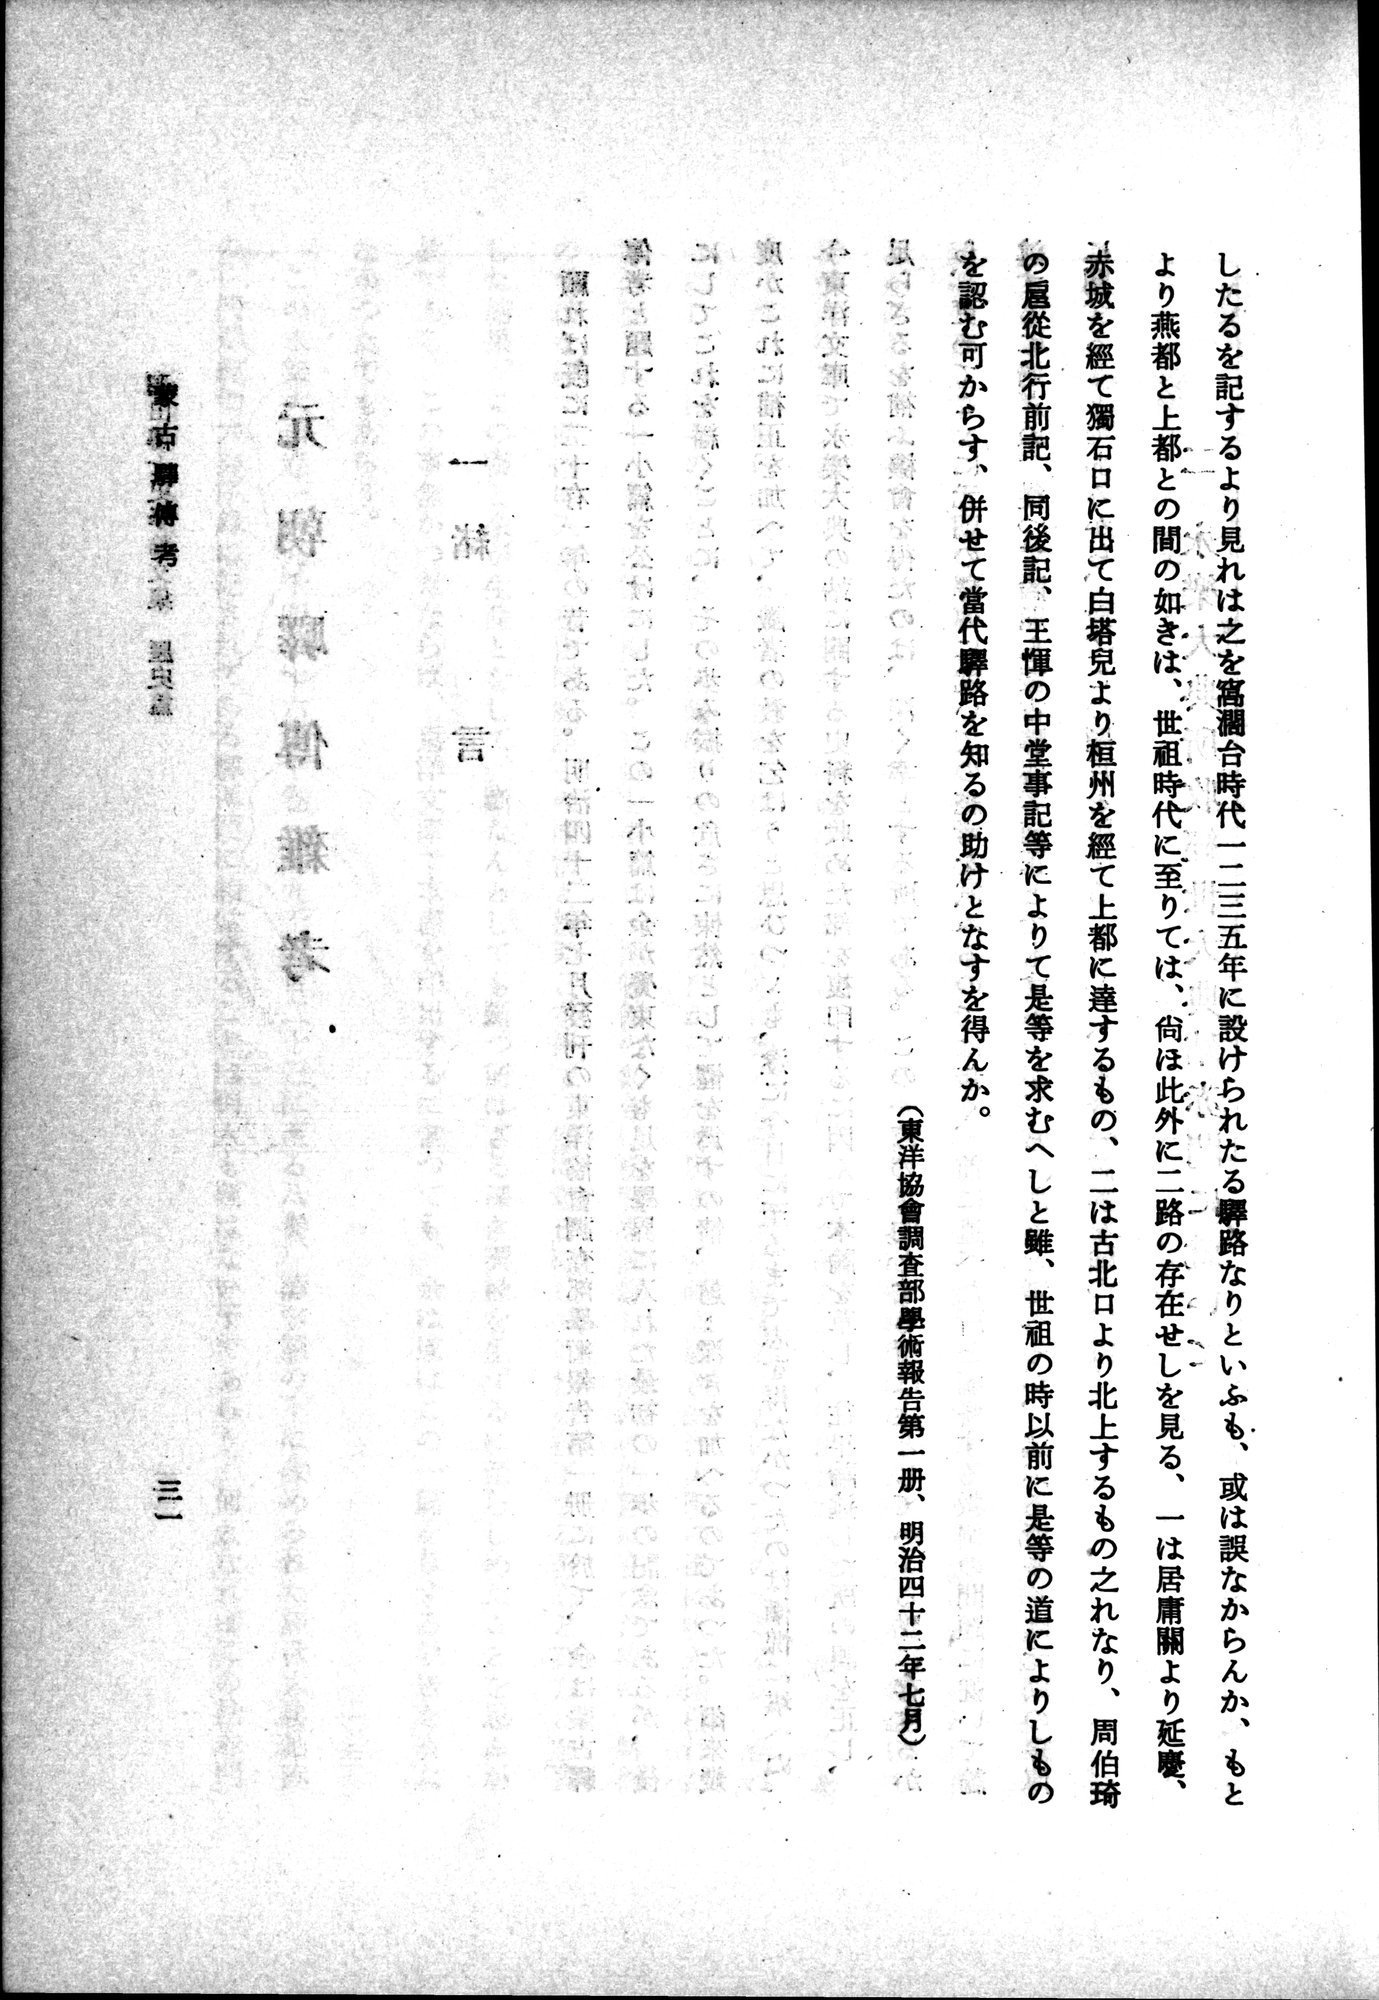 羽田博士史学論文集 : vol.1 / 69 ページ（白黒高解像度画像）